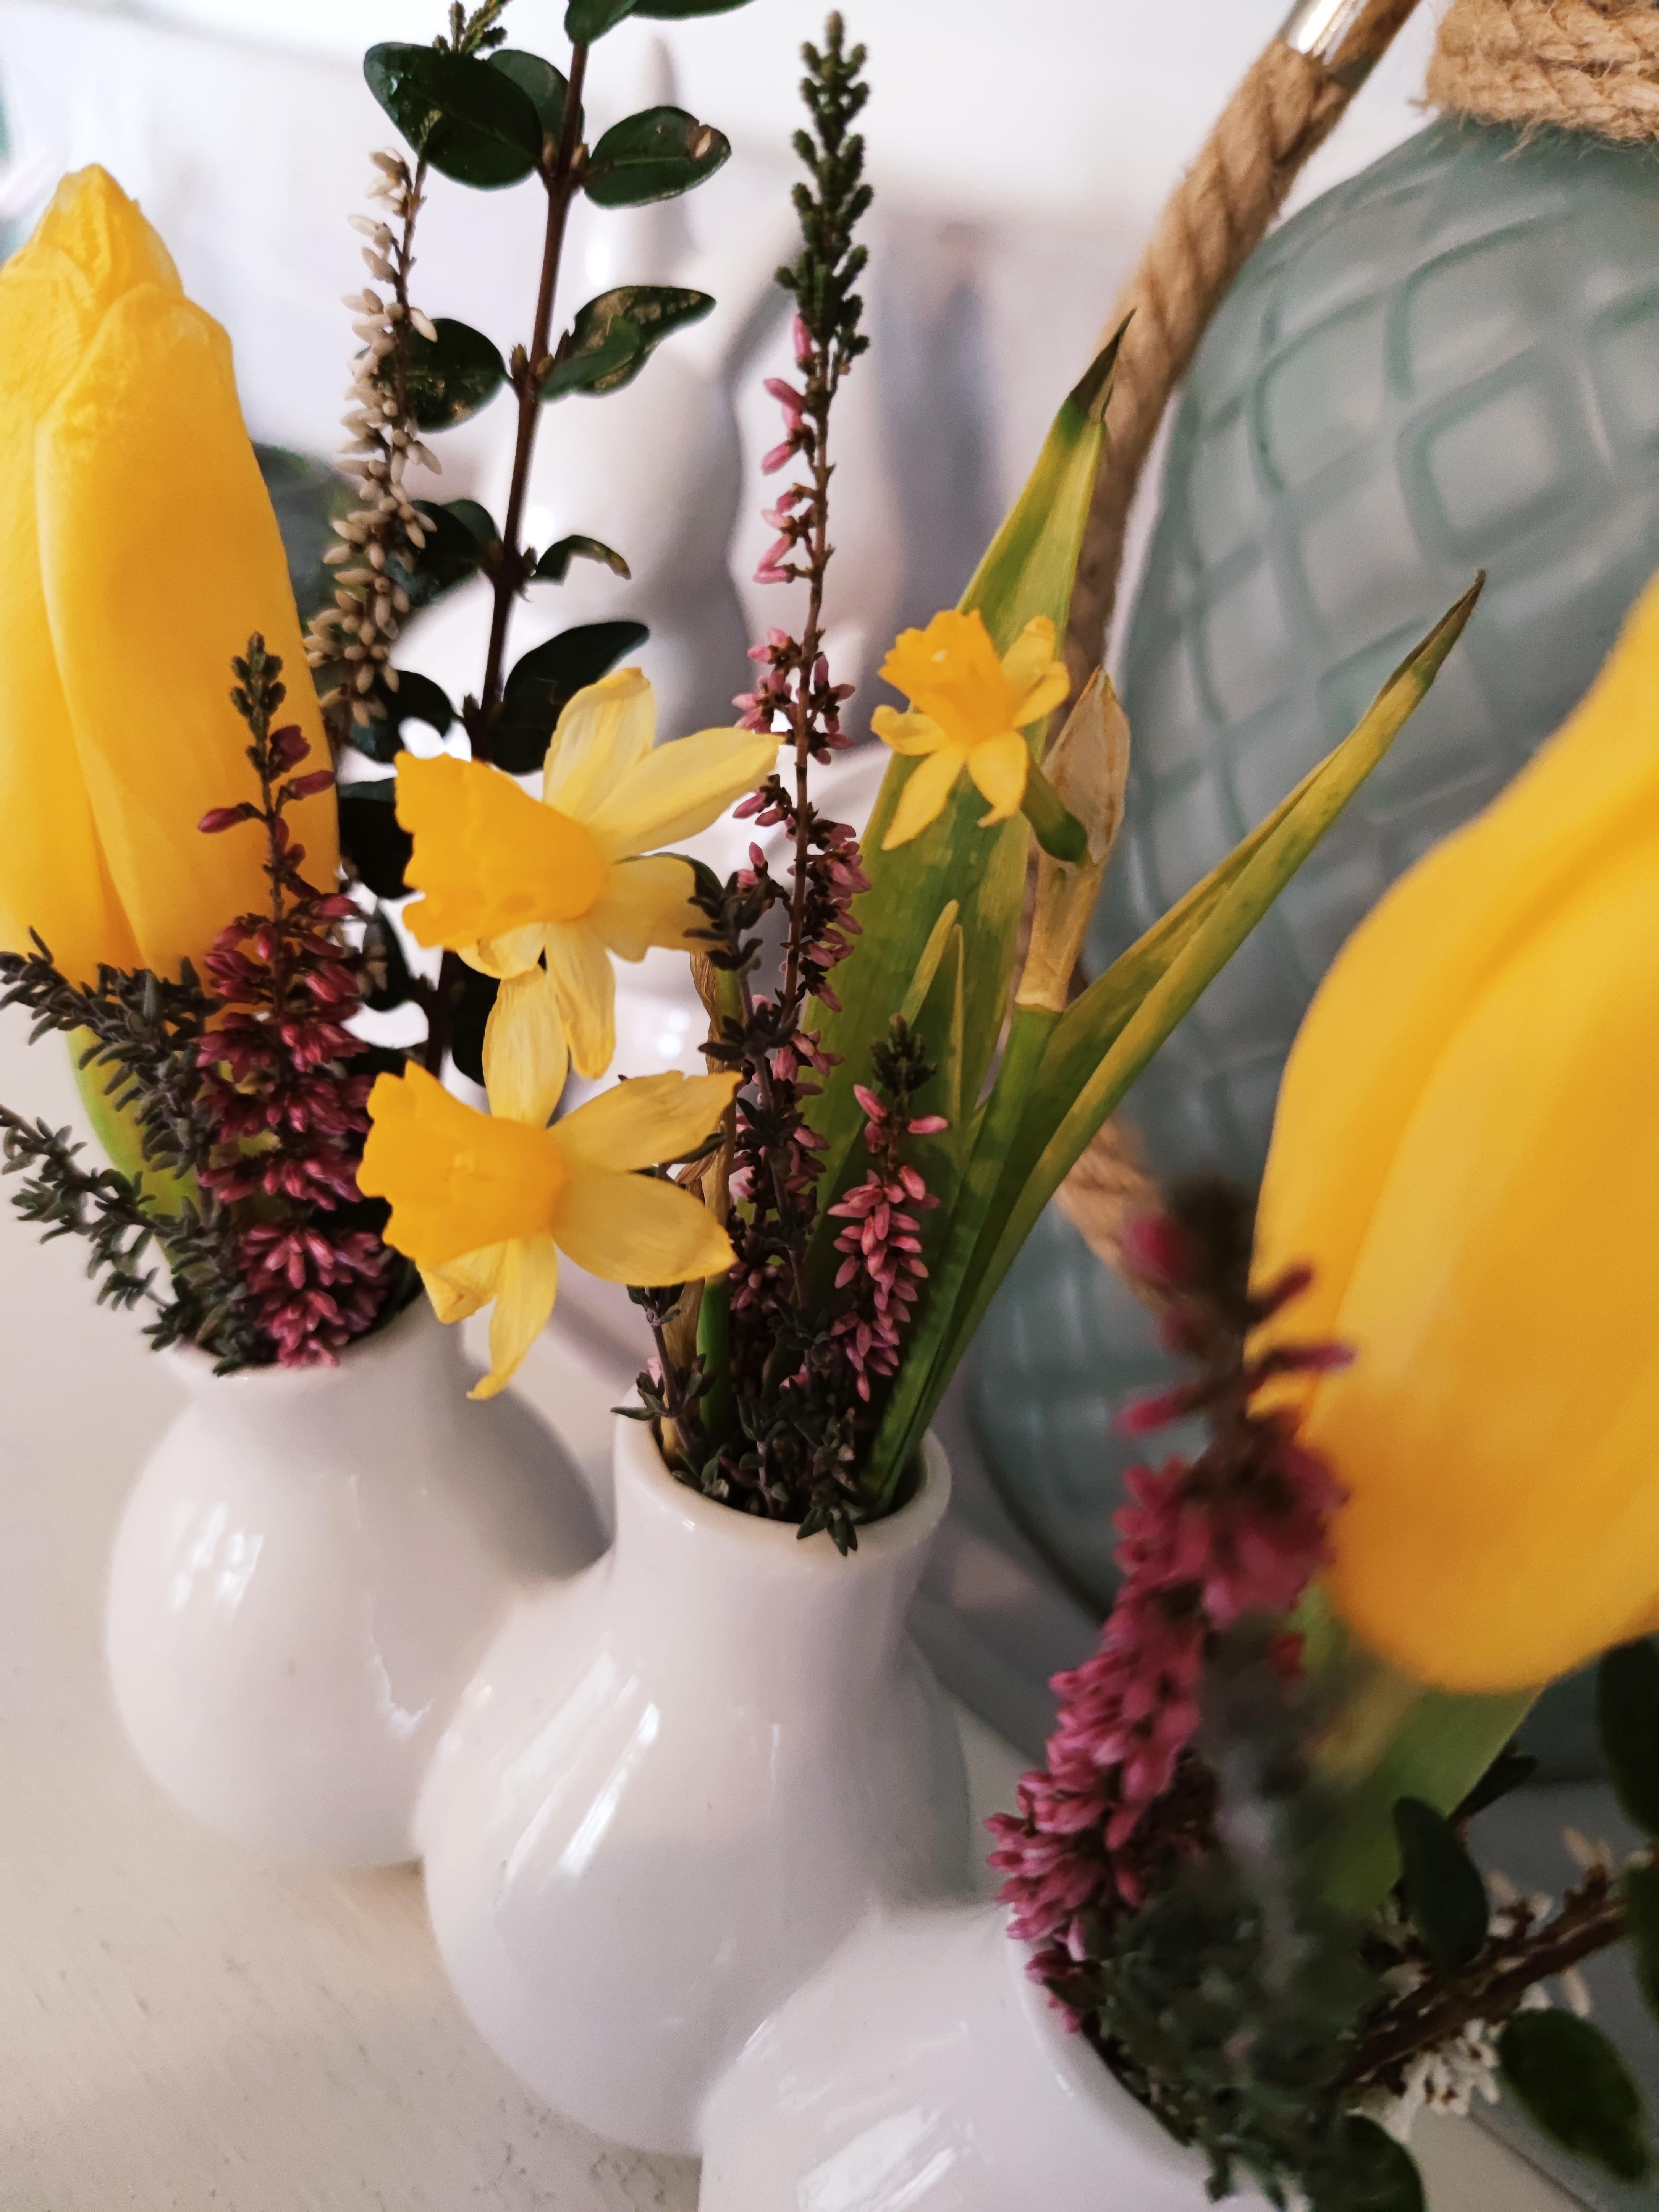 ein paar Blümchen 🌷💐 fürs #esszimmer
#frühling #garten #flowers #gelb #vase